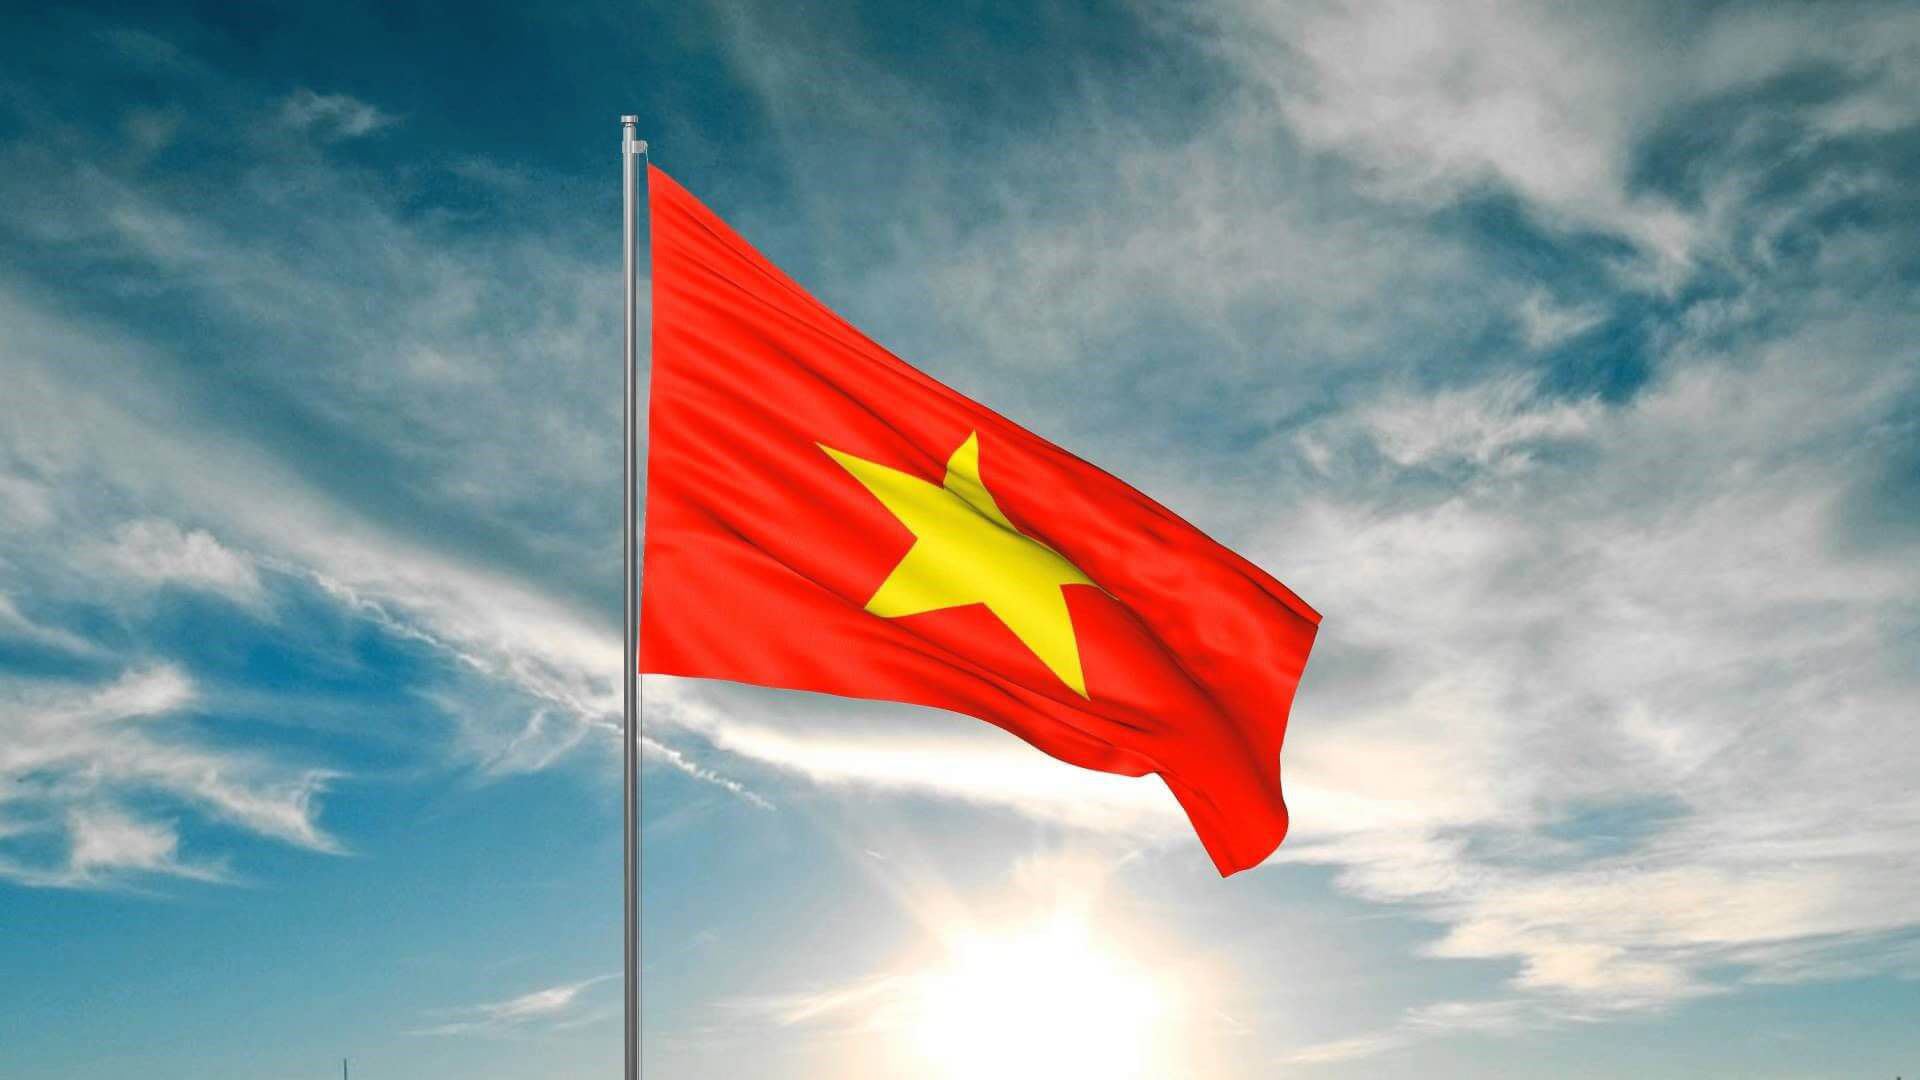 Áo cờ đỏ sao vàng truyền tải thông điệp về tinh thần yêu nước và về đất nước Việt Nam. Thiết kế đậm chất dân tộc, mang đến cho chúng ta niềm tự hào về văn hóa và lịch sử của dân tộc Việt Nam. Hãy xem hình ảnh áo cờ đỏ sao vàng để cảm nhận sự độc đáo và đẹp đẽ của chiếc áo này.